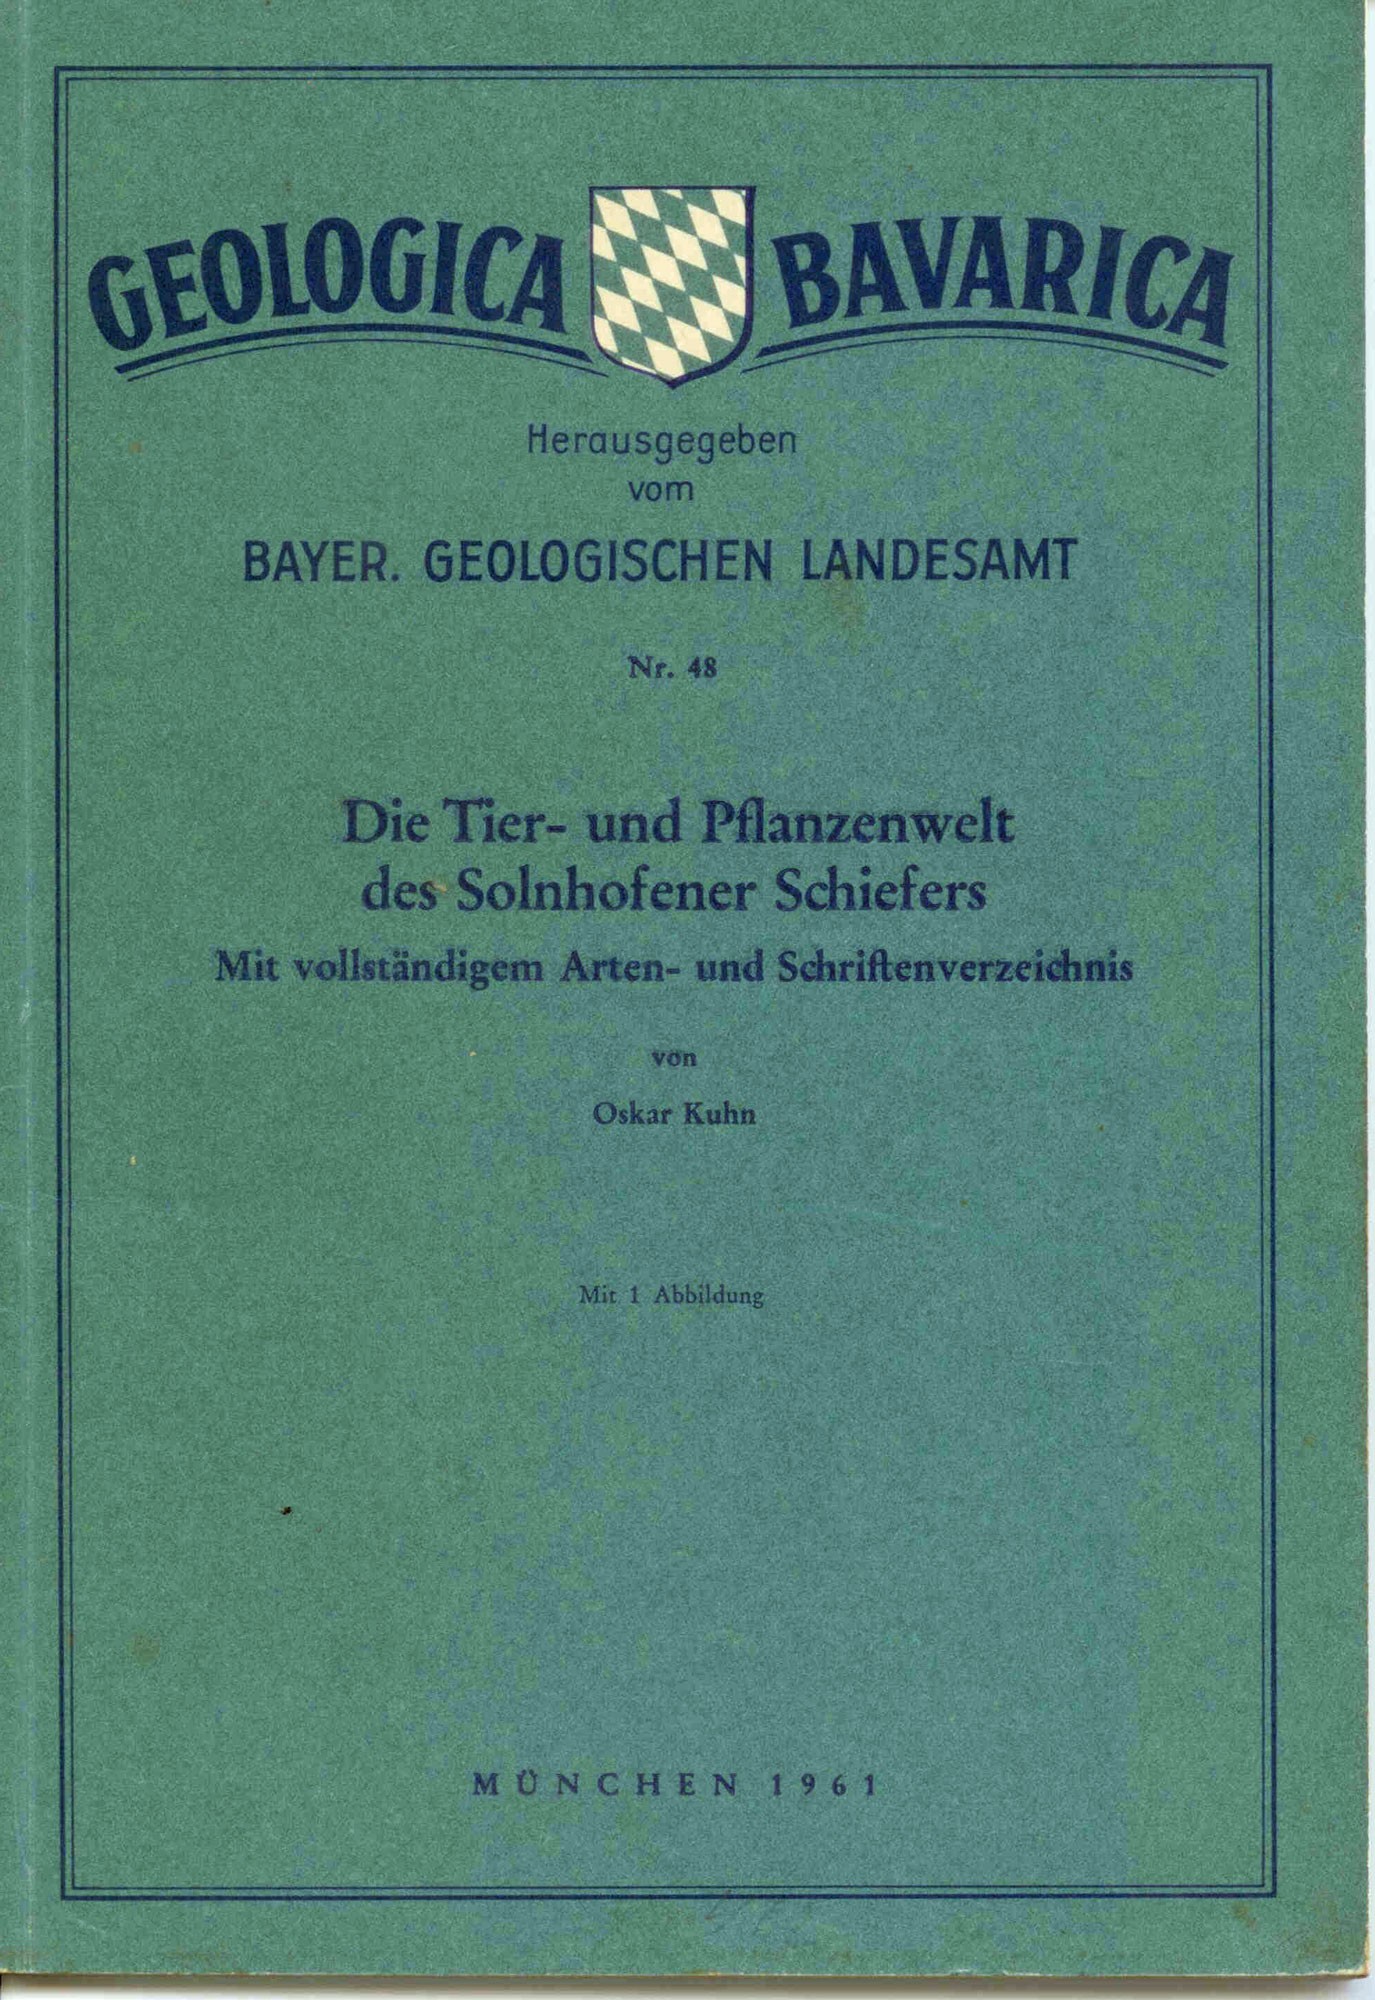 Kuhn, O.: Die Tier- und Pflanzenwelt des Solnhofener Schiefers. Mit vollständigem Arten- und Schriftenverzeichnis. 